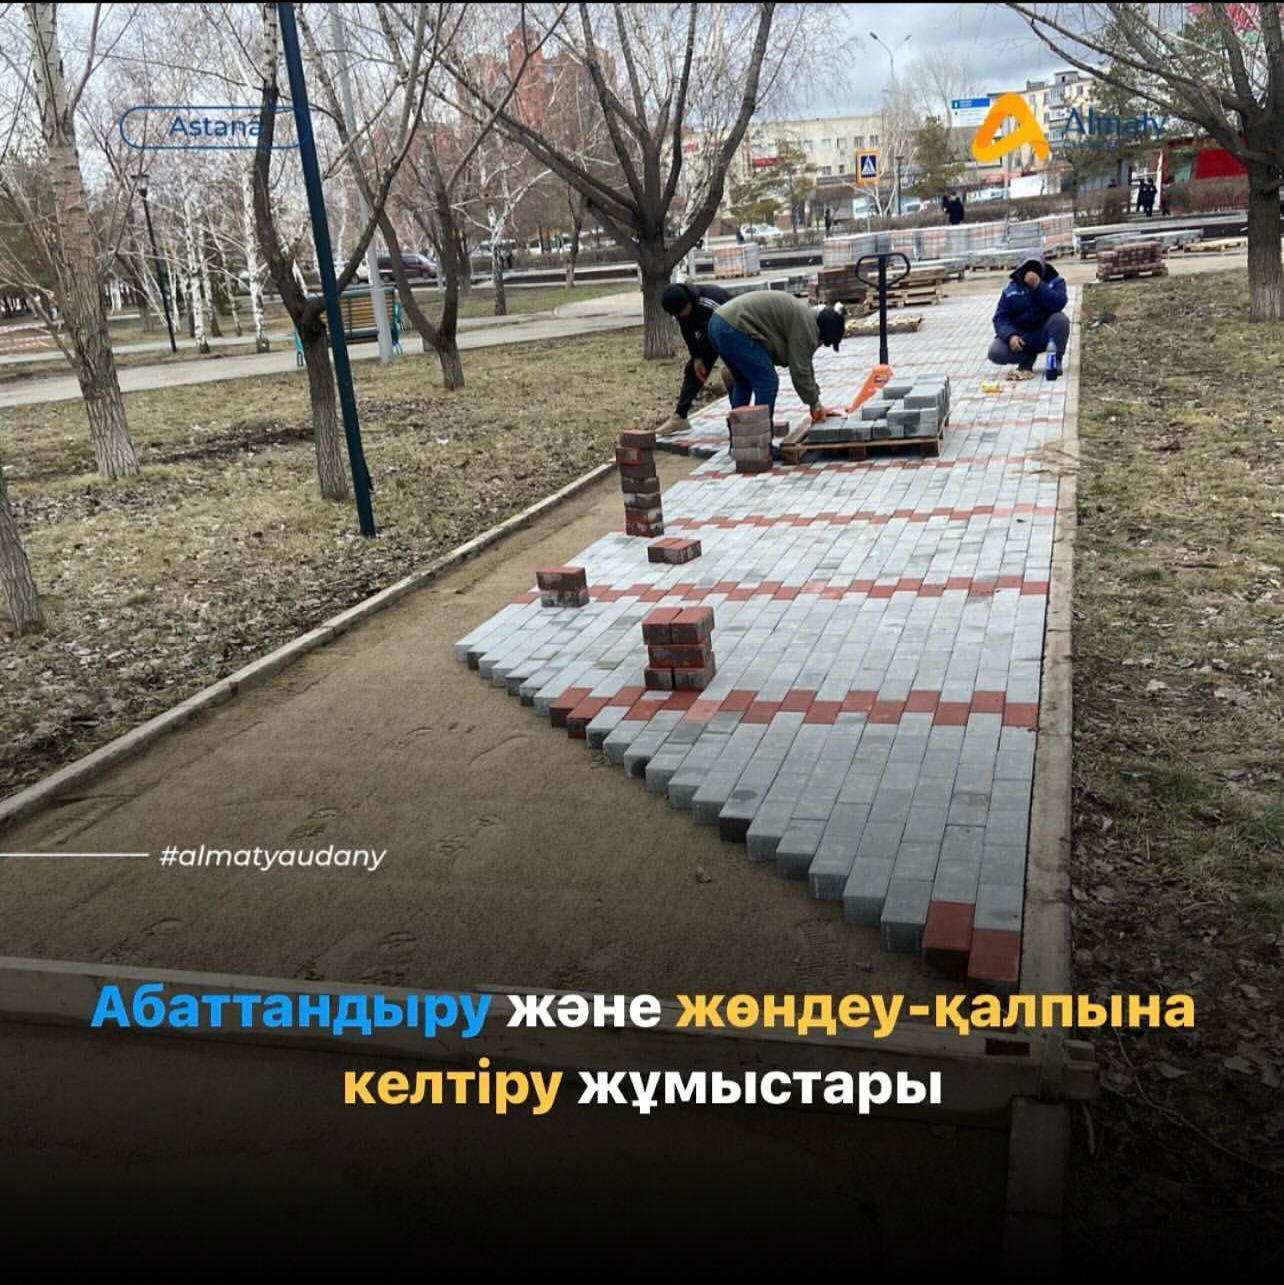 В районе «Алматы» активно ведутся работы по благоустройству и ремонтно-восстановительным работам.